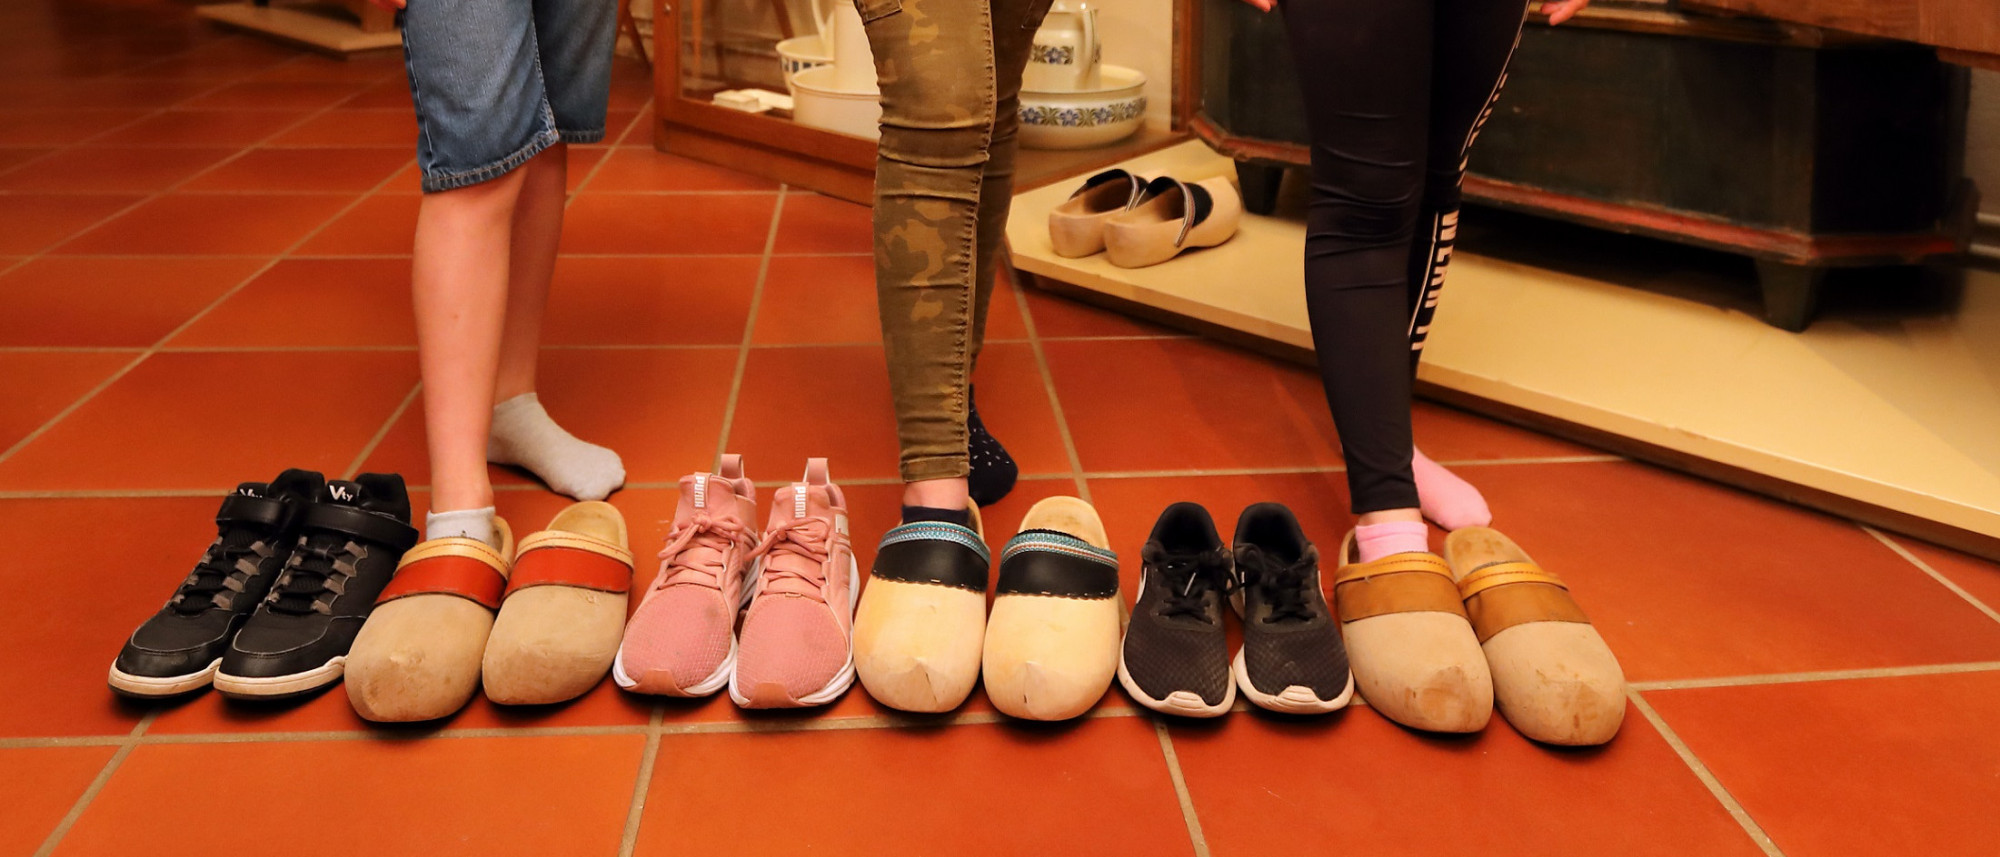 Auf einem Boden stehen 6 Schuhpaare. Drei Paare sind moderne Turnschuhe und drei Paare Holzpantoffeln. Dahinter sieht man die Beine von drei Kindern.